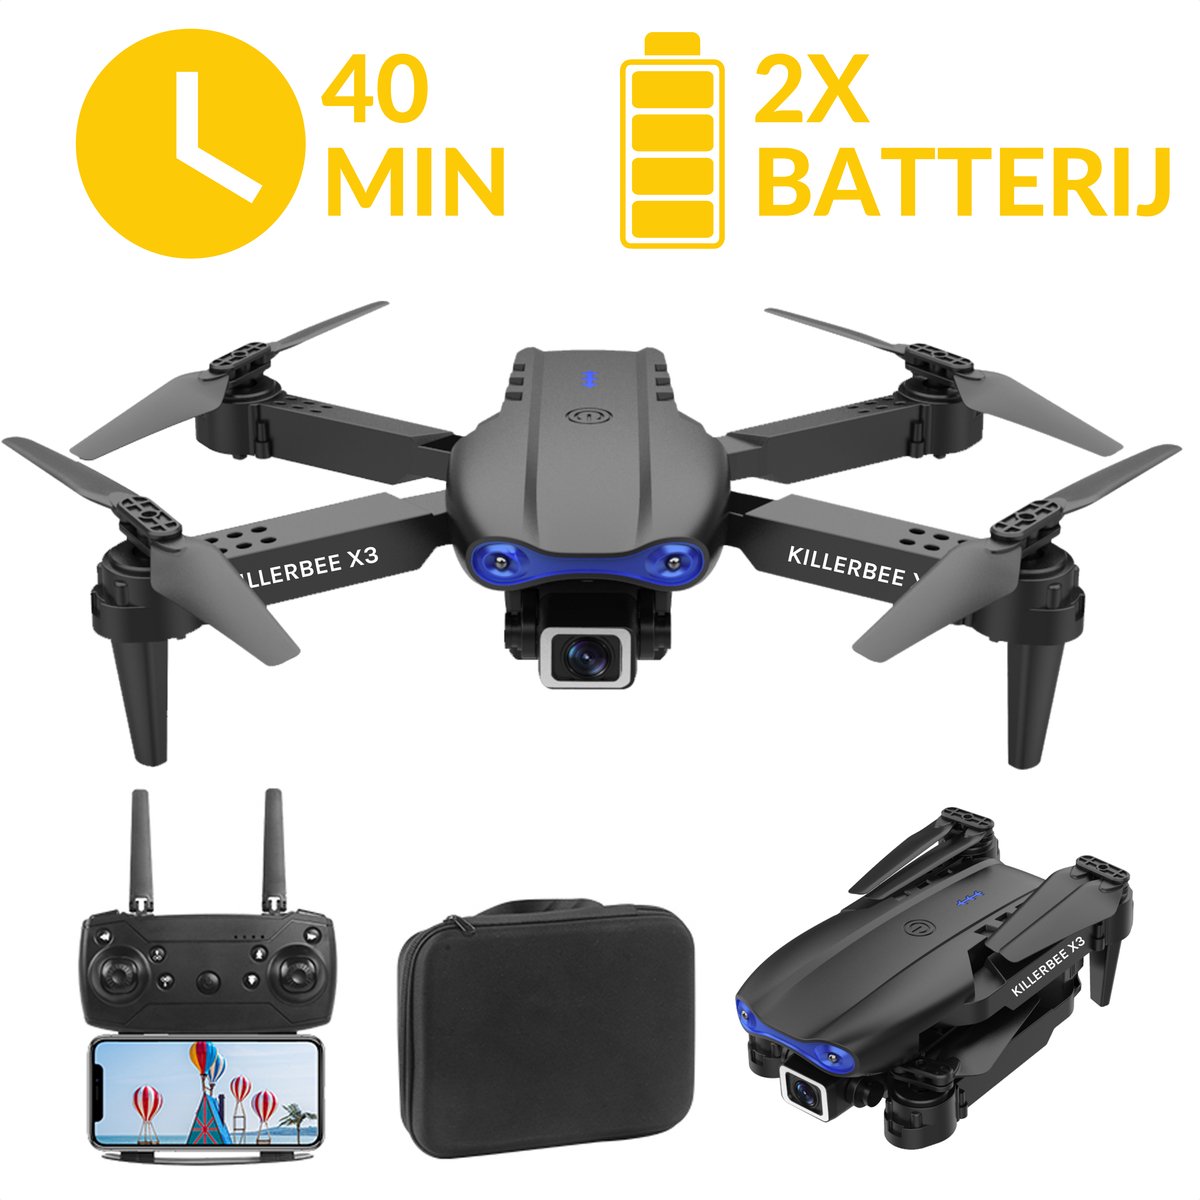 Killerbee X3 Skyhawk Zwart - Quad Drone met camera voor buiten en binnen - Drone voor kinderen en volwassenen - fly more combo met 40 minuten vliegtijd - inclusief gratis cursus- inclusief opbergtas en 2 accu's.